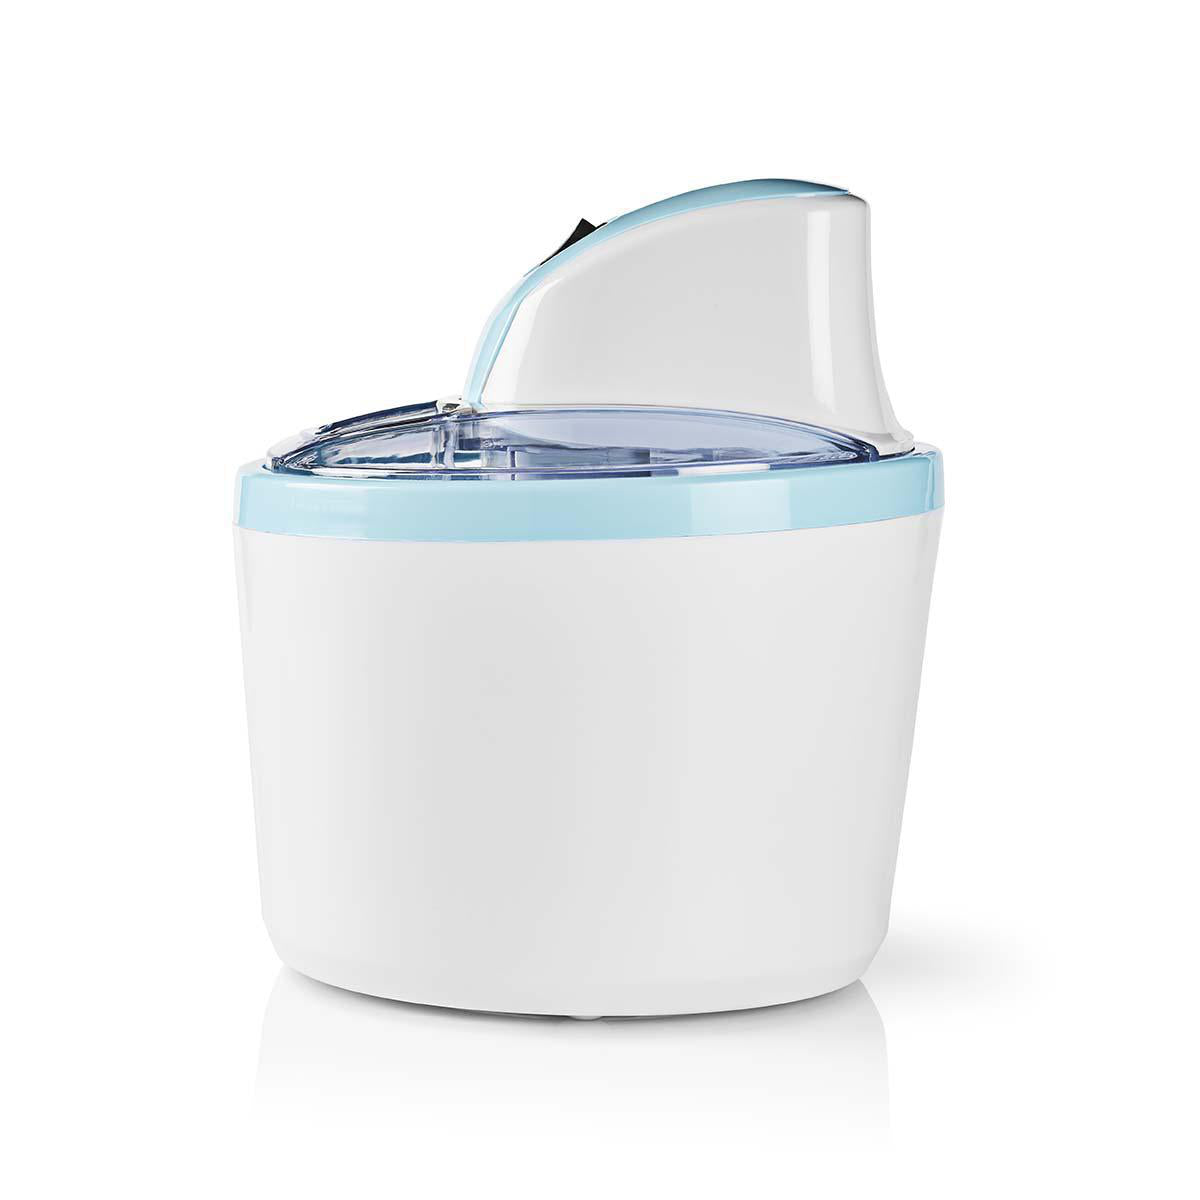 Sorveteira - Máquina de gelados Nedis 1,2 l | Azul / branco | Alumínio / plástico KAIM110CWT12